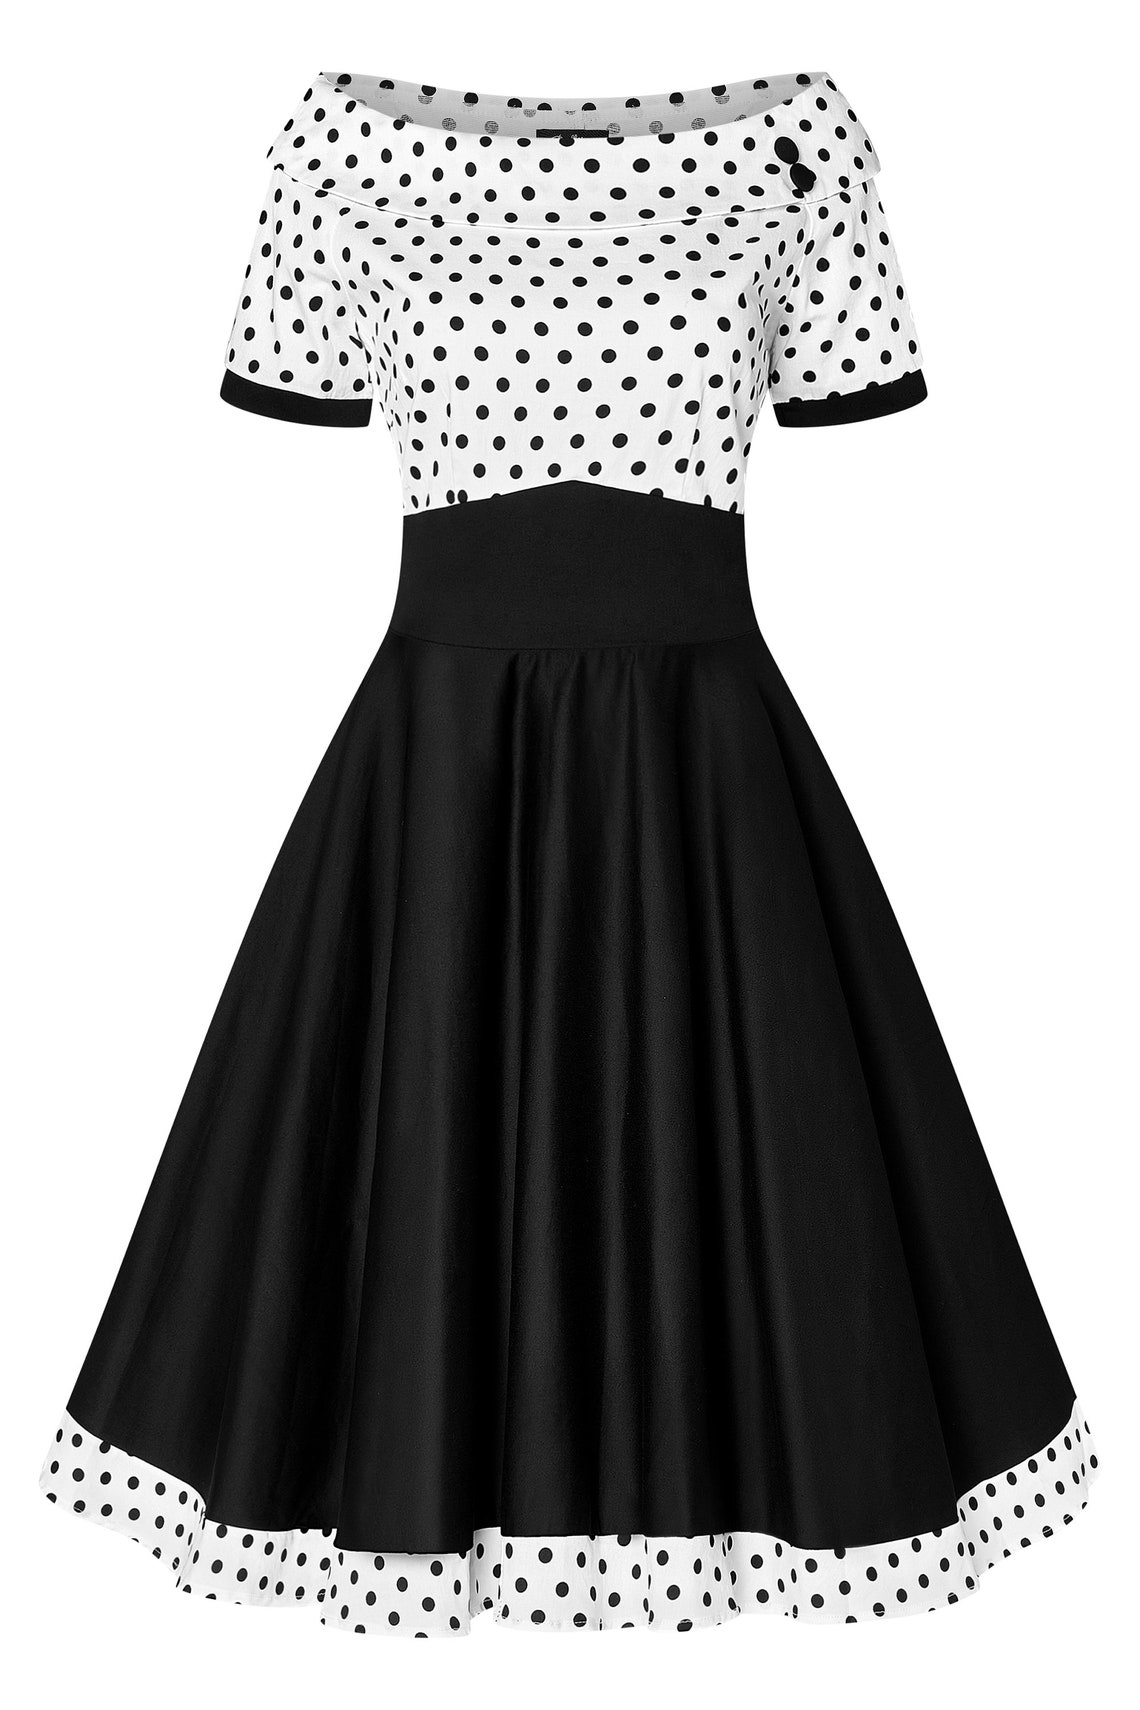 Darlene Retro Swing Dress in White/black Polka | Etsy